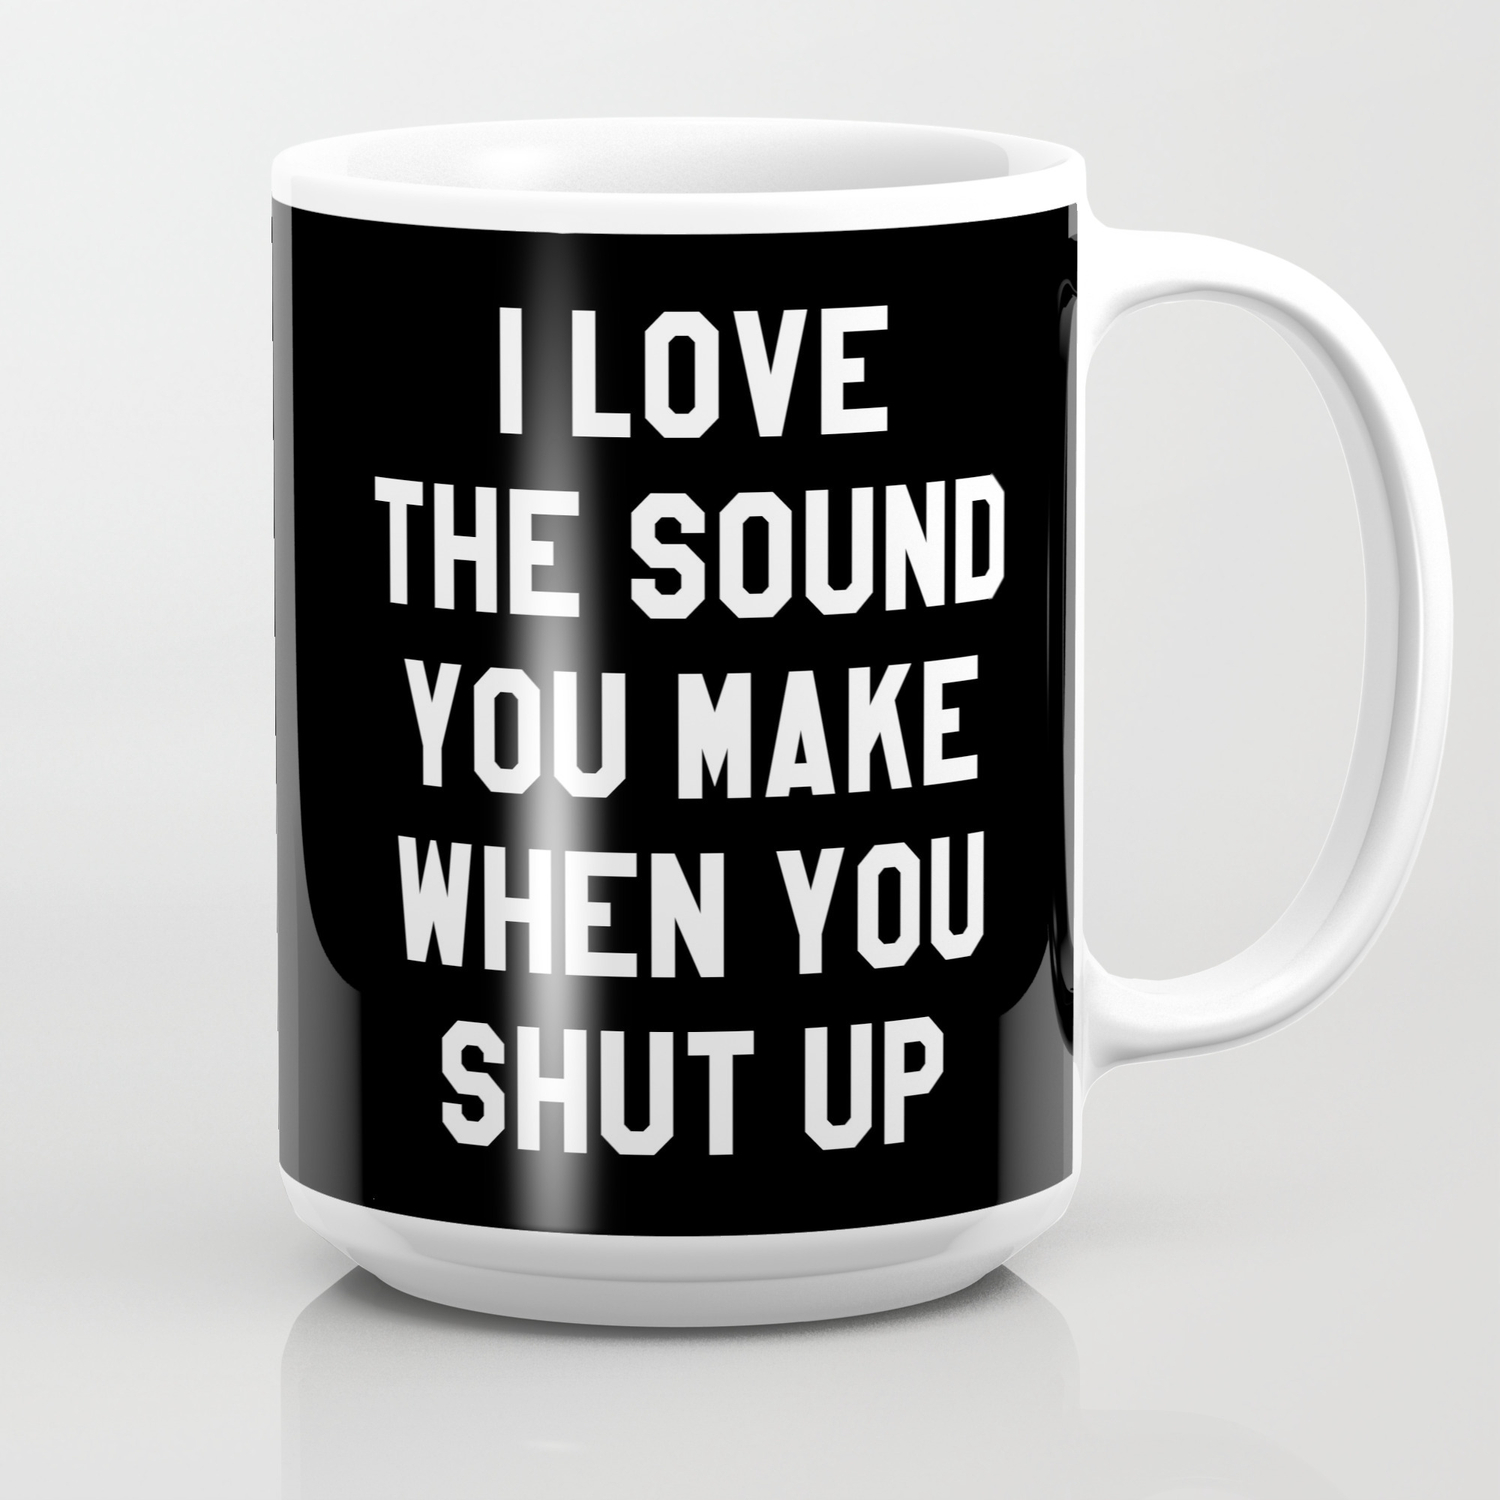 I Like The Sound You Make When You Shut Up Mug Cup 